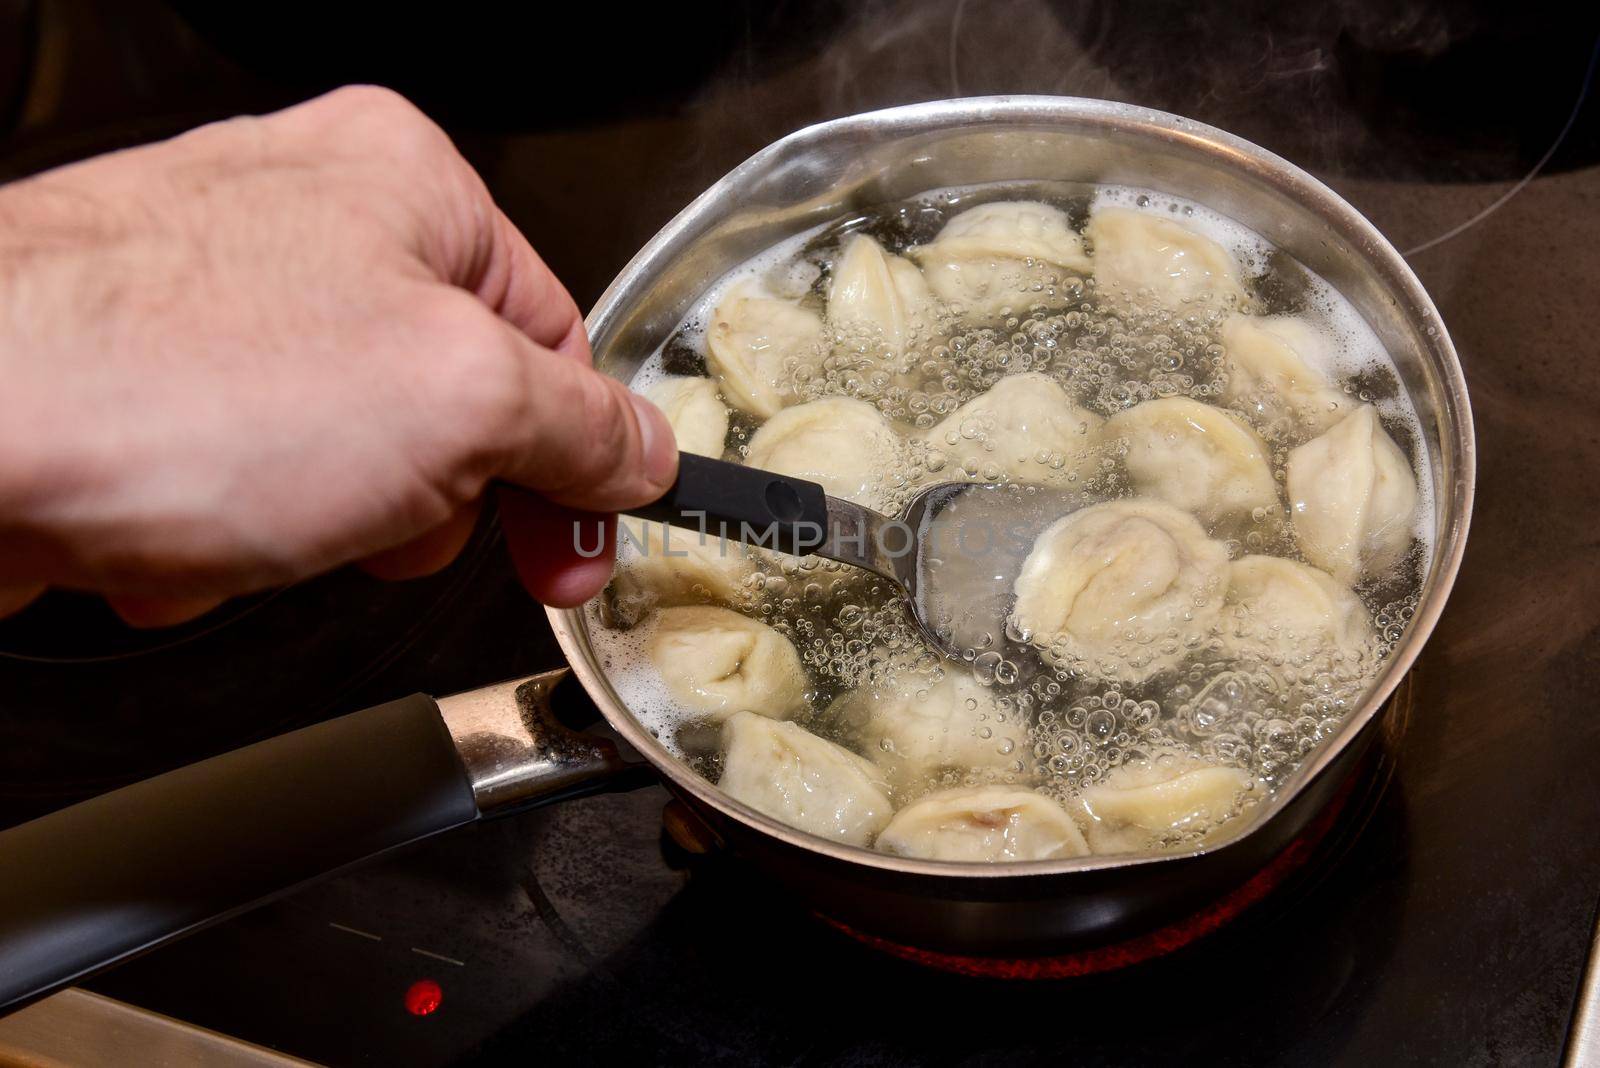 Dumplings in boiling water. Meat dumplings are boiled in a pot of boiling water.